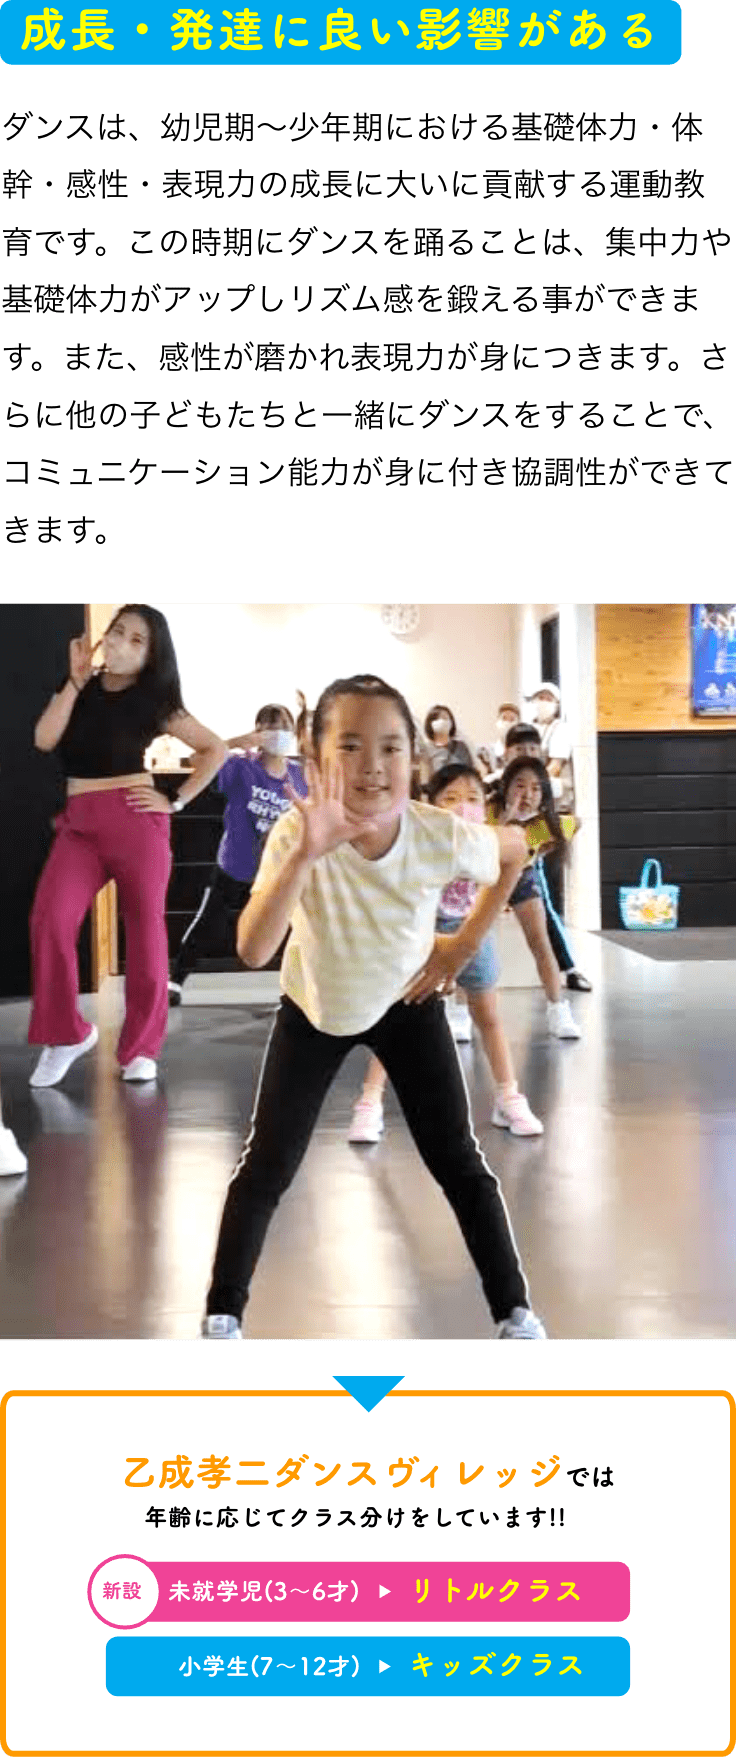 成長・発達に良い影響がある ダンスは、幼児期～少年期における基礎体力・体幹・感性・表現力の成長に大いに貢献する運動教育です。この時期にダンスを踊ることは、集中力や基礎体力がアップしリズム感を鍛える事ができます。また、感性が磨かれ表現力が身につきます。さらに他の子どもたちと一緒にダンスをすることで、コミュニケーション能力が身に付き協調性ができてきます。